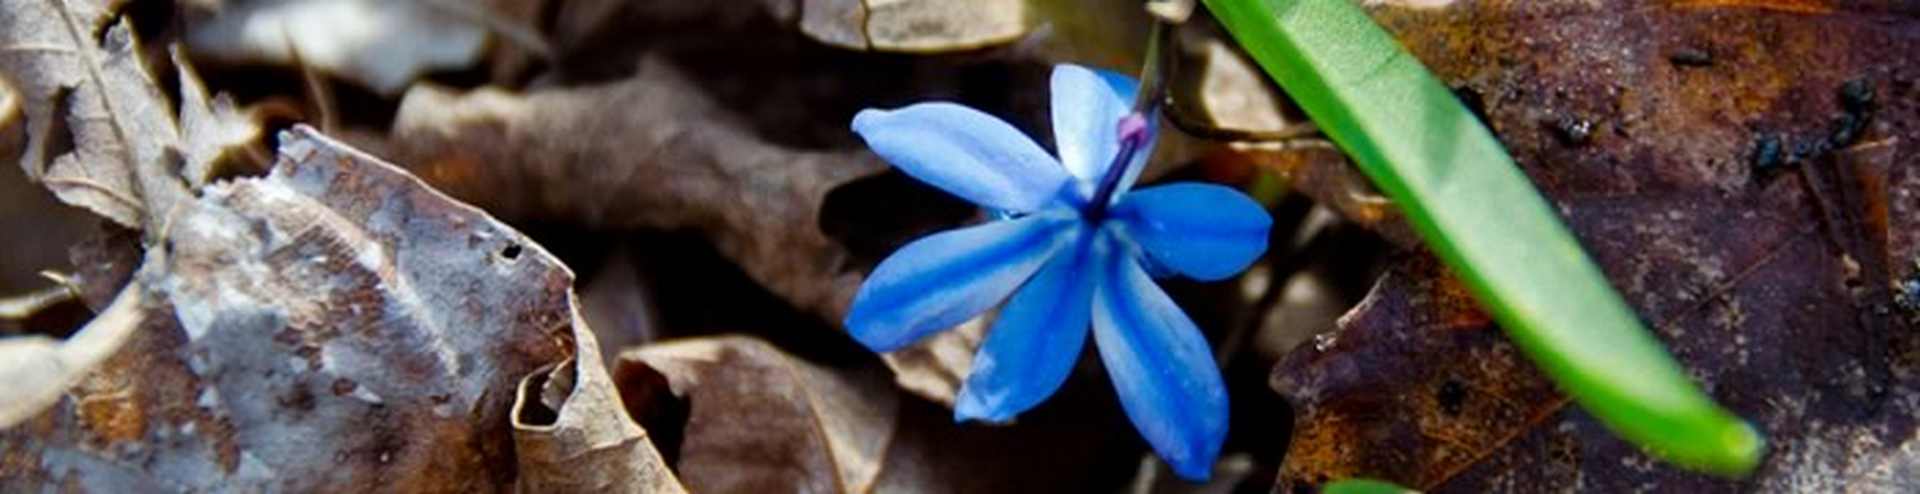 blue-flower.jpg - 65.93 kB